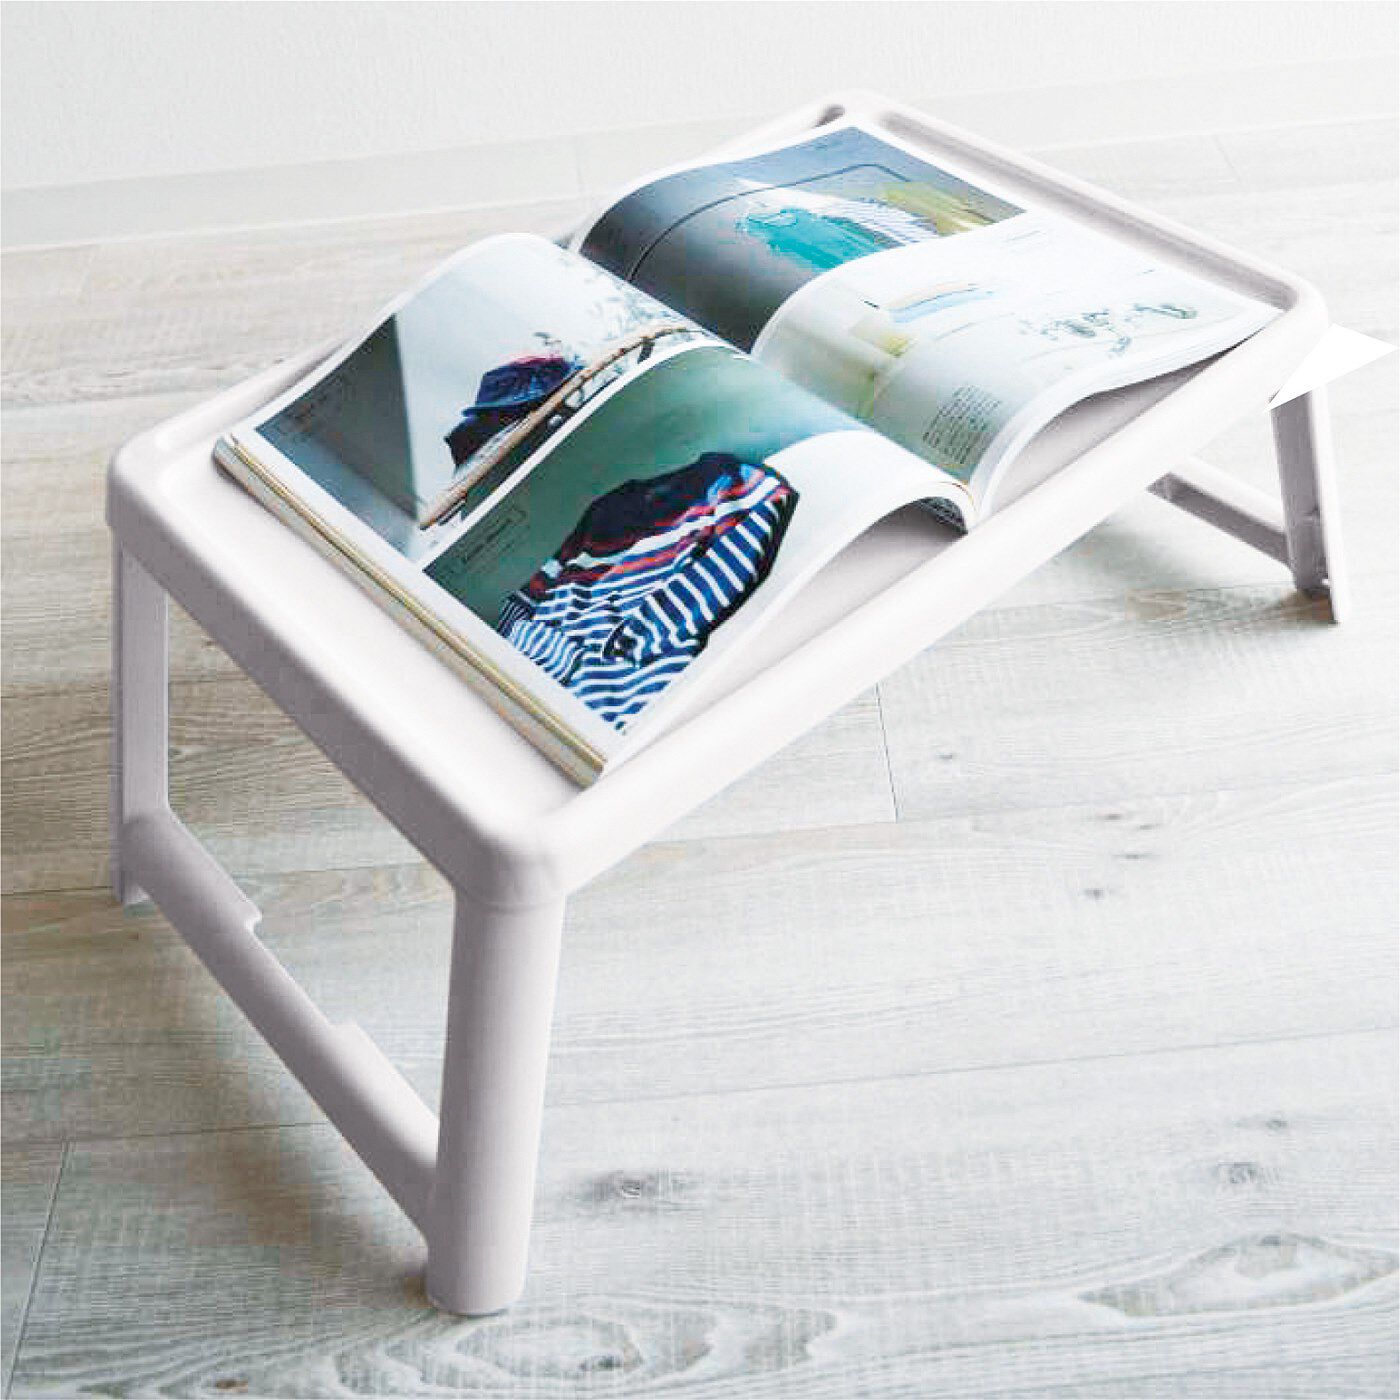 L'AMIPLUS|タブレットを立てて使える　折りたたみ式どこでもマルチテーブル|趣味を楽しむスペースに/雑誌を眺めたり、趣味や仕事の作業テーブルにしたり。